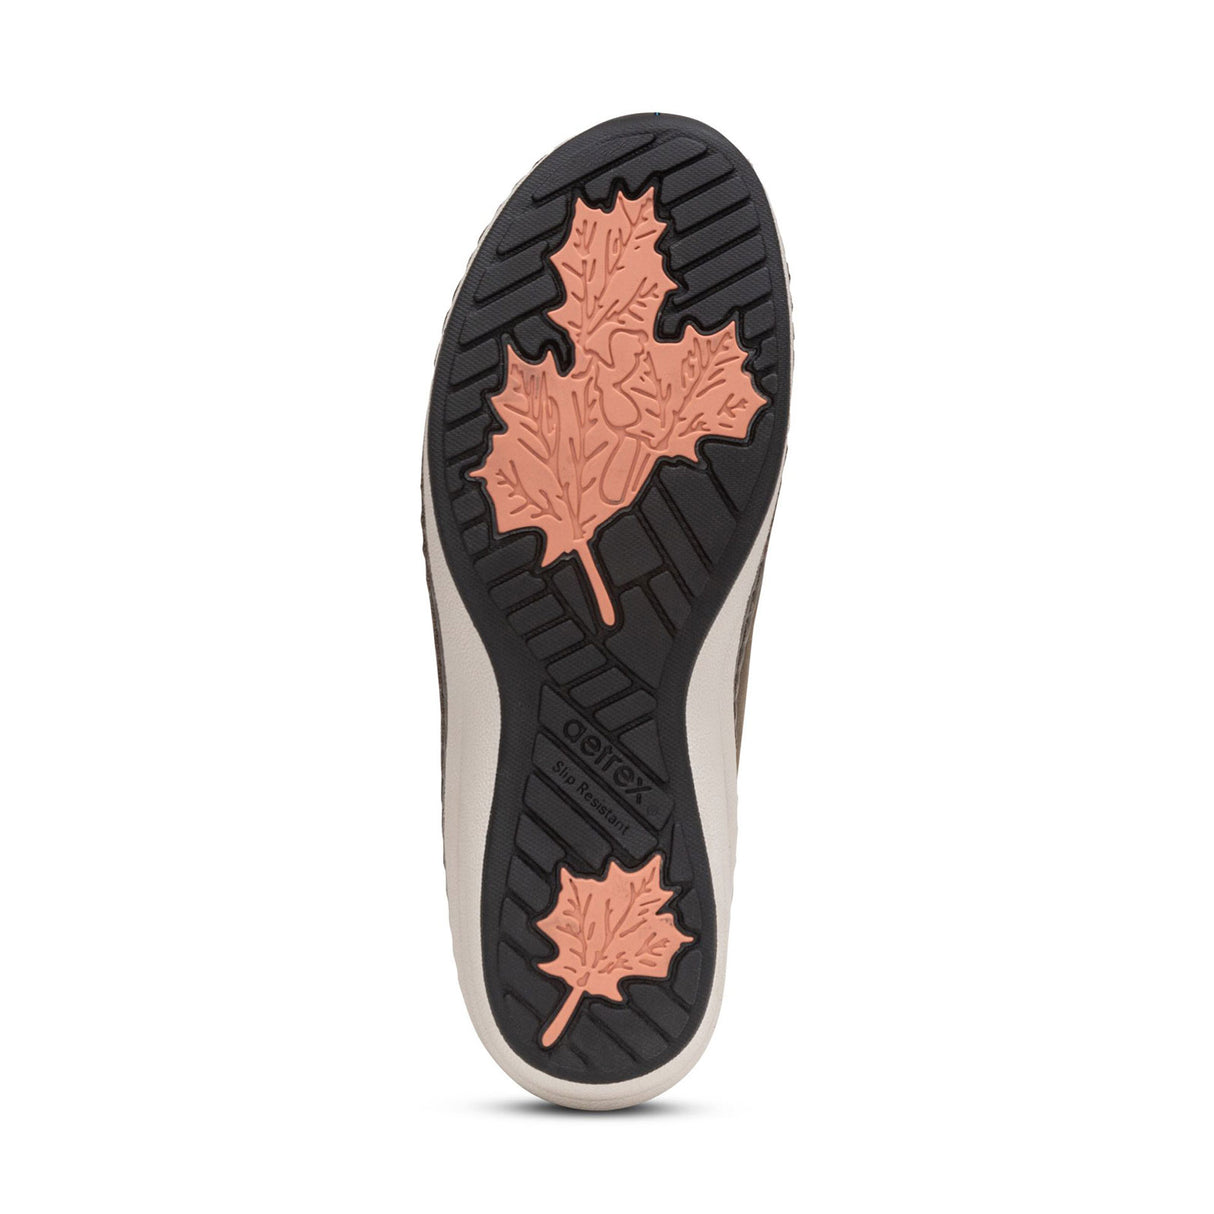 Aetrex Mara Sneaker (Women) - Mushroom Dress-Casual - Sneakers - The Heel Shoe Fitters